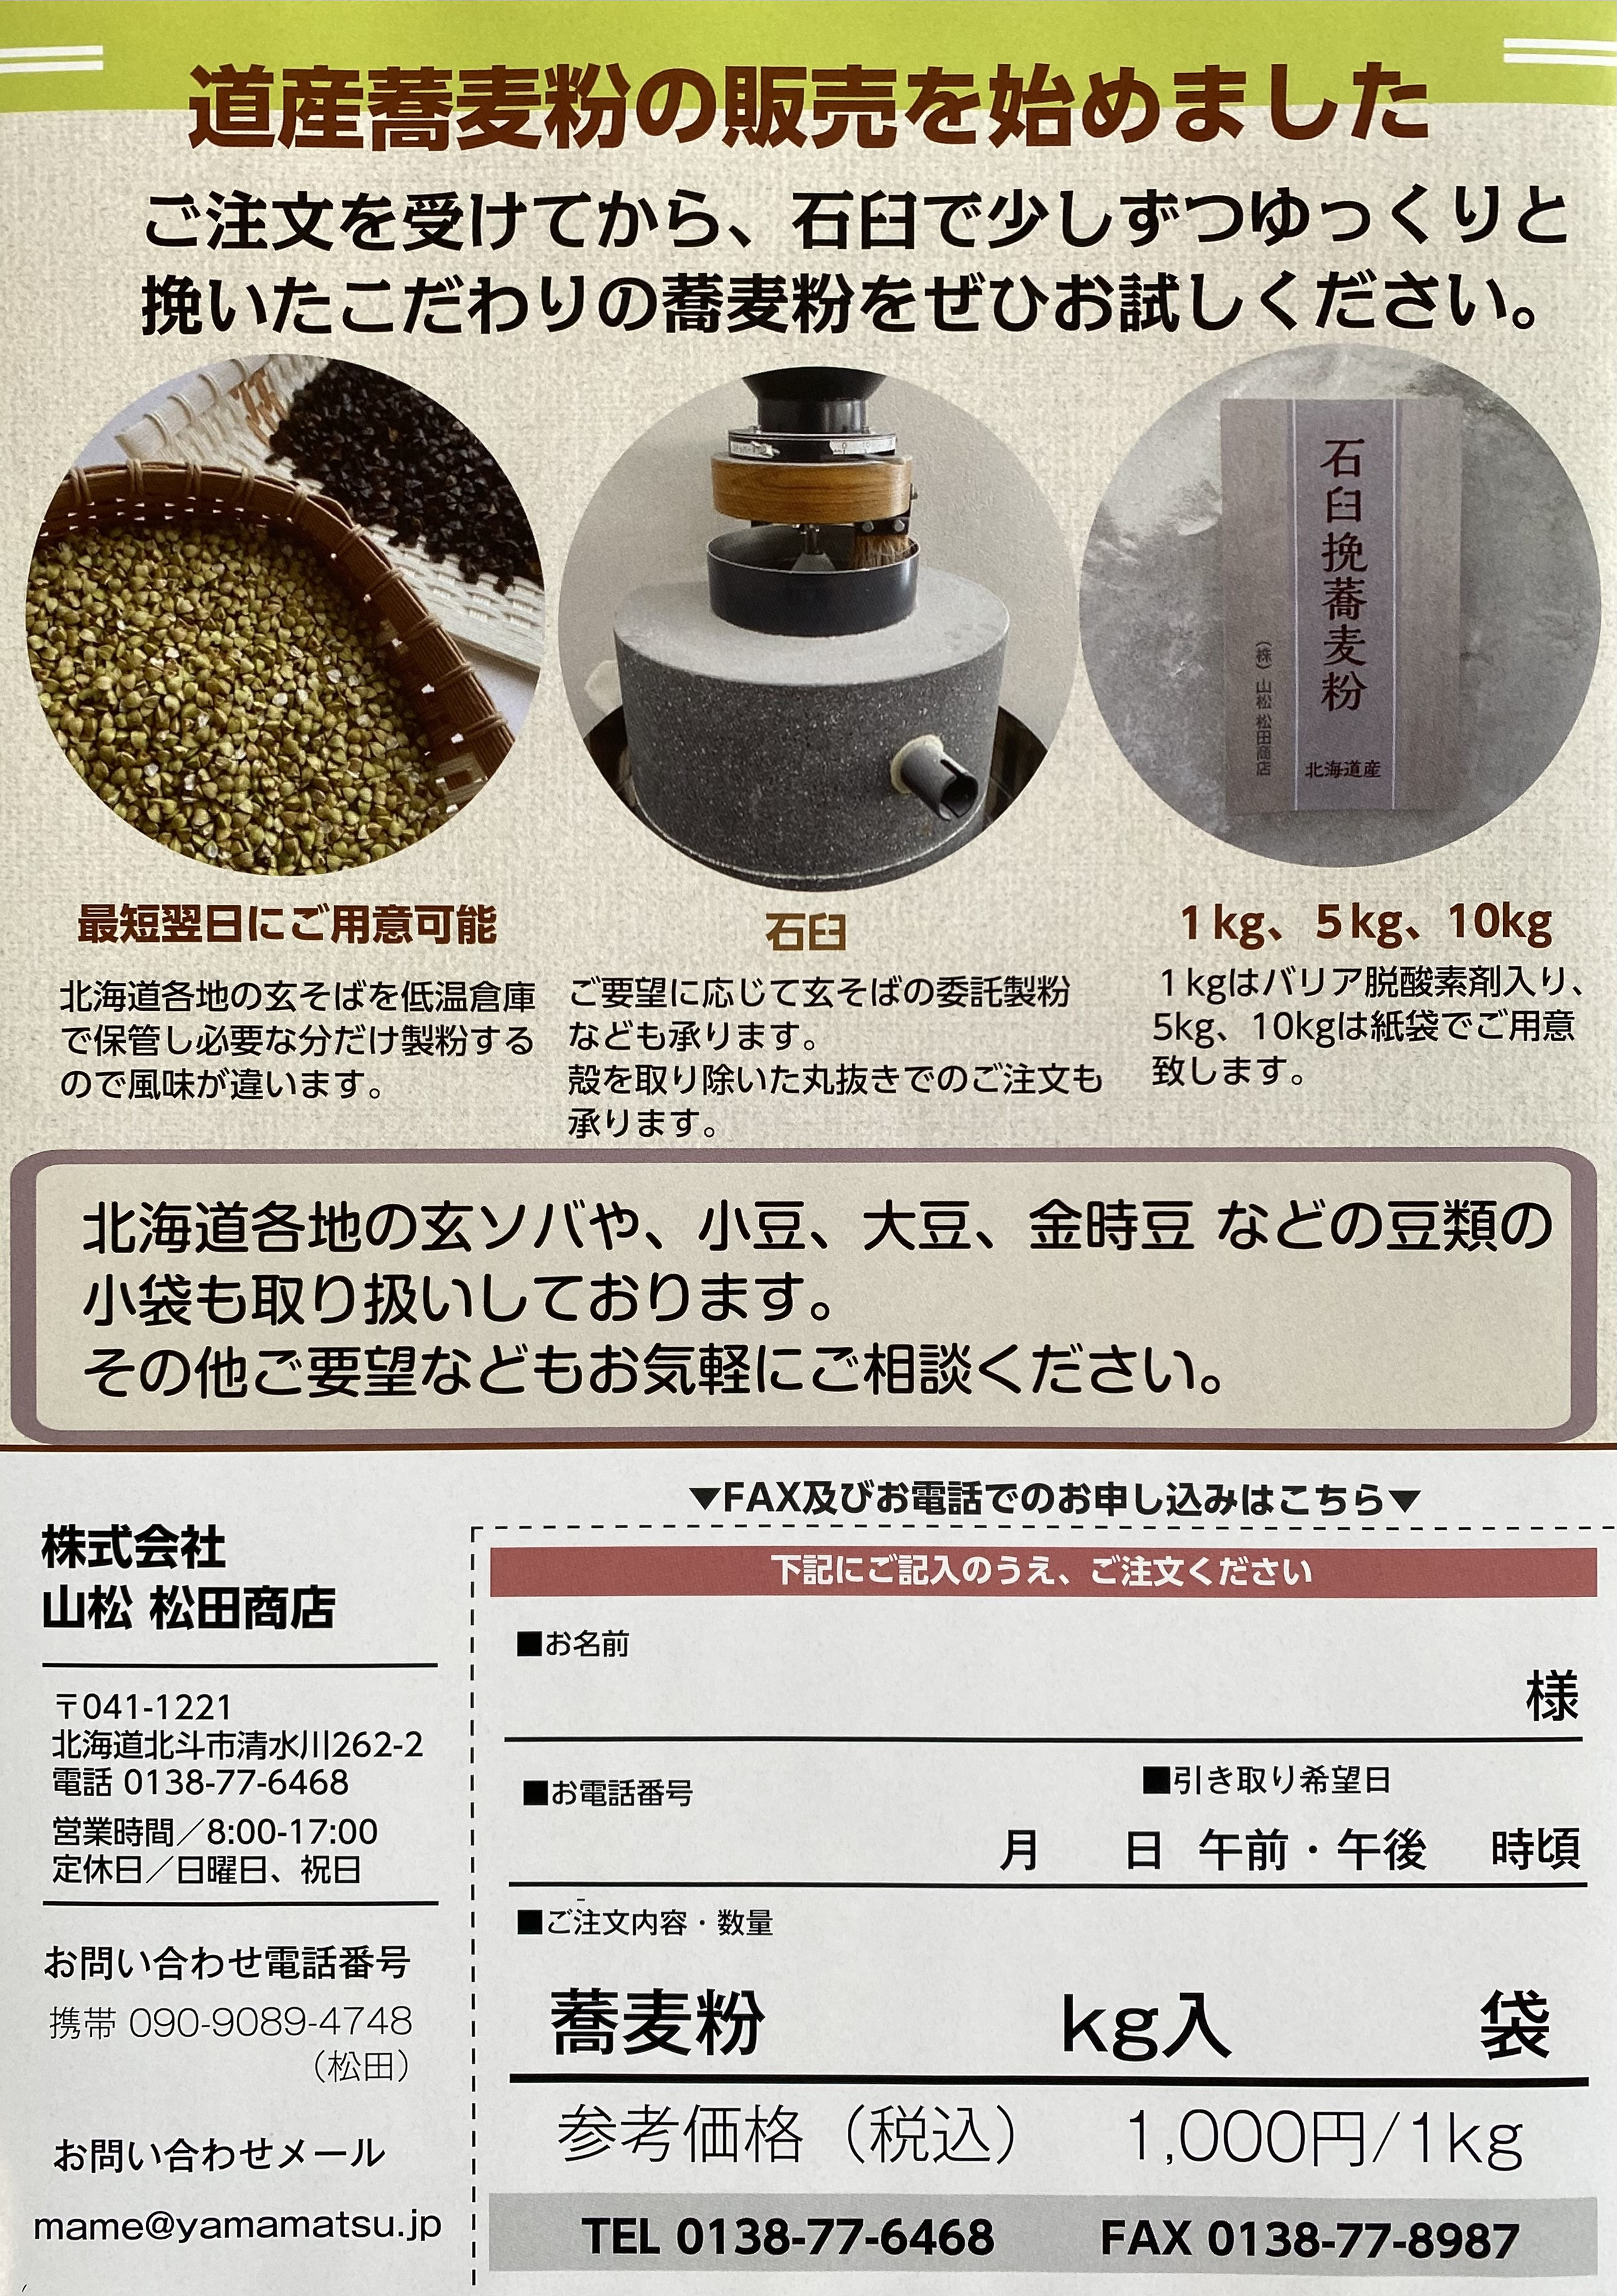 北海道産 石臼挽 そば粉の販売を始めました。